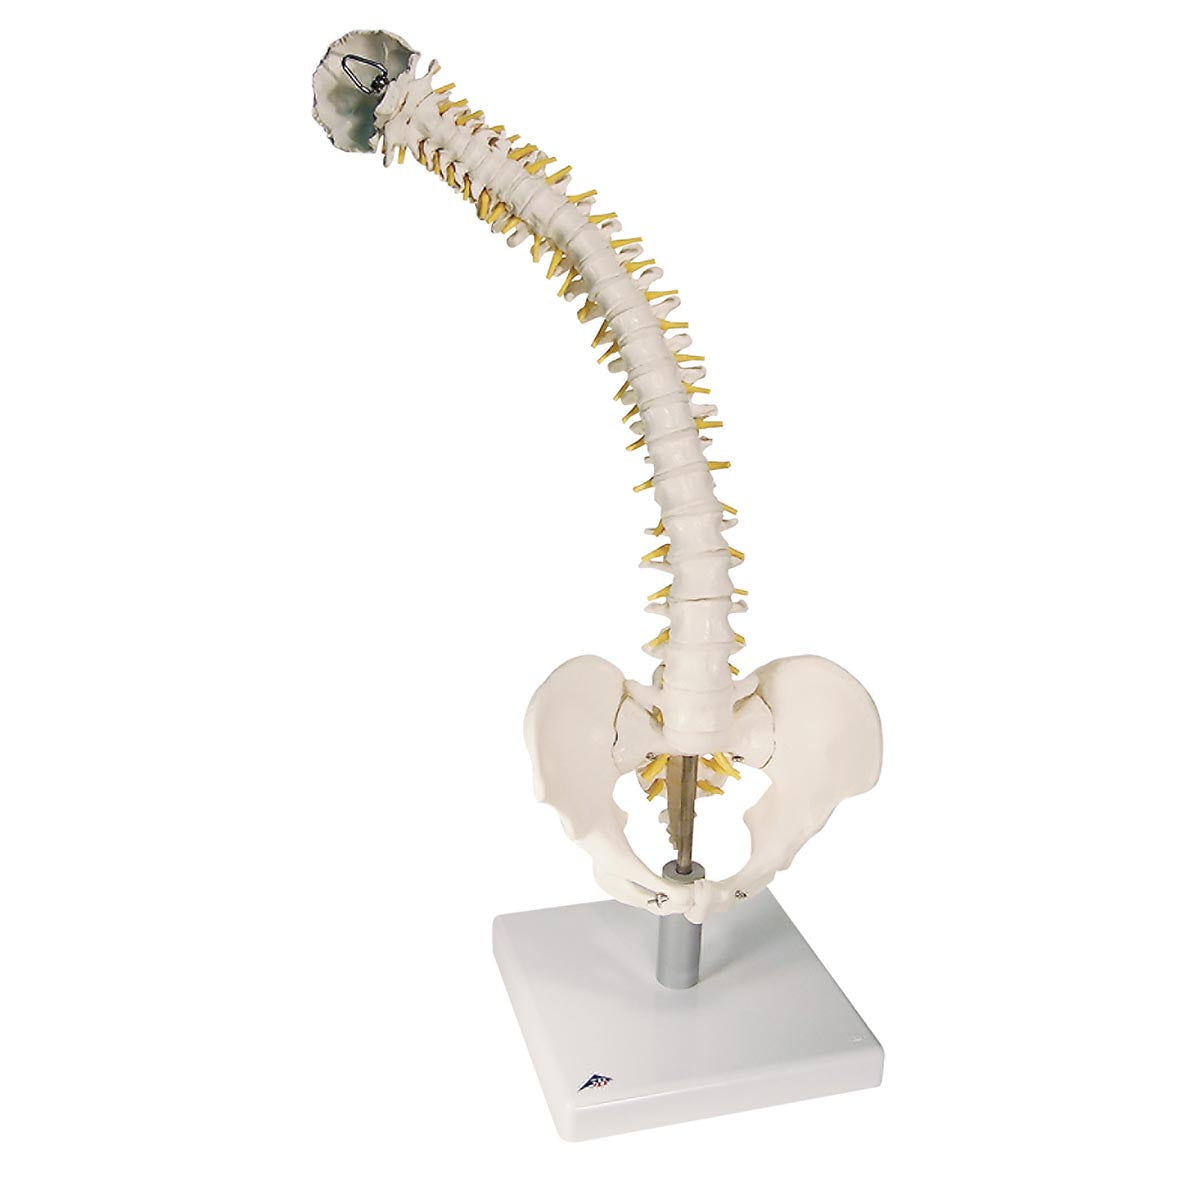 Flexibel modell av ryggraden med extra mjuka skivor, nerver etc. presenterat på stativ